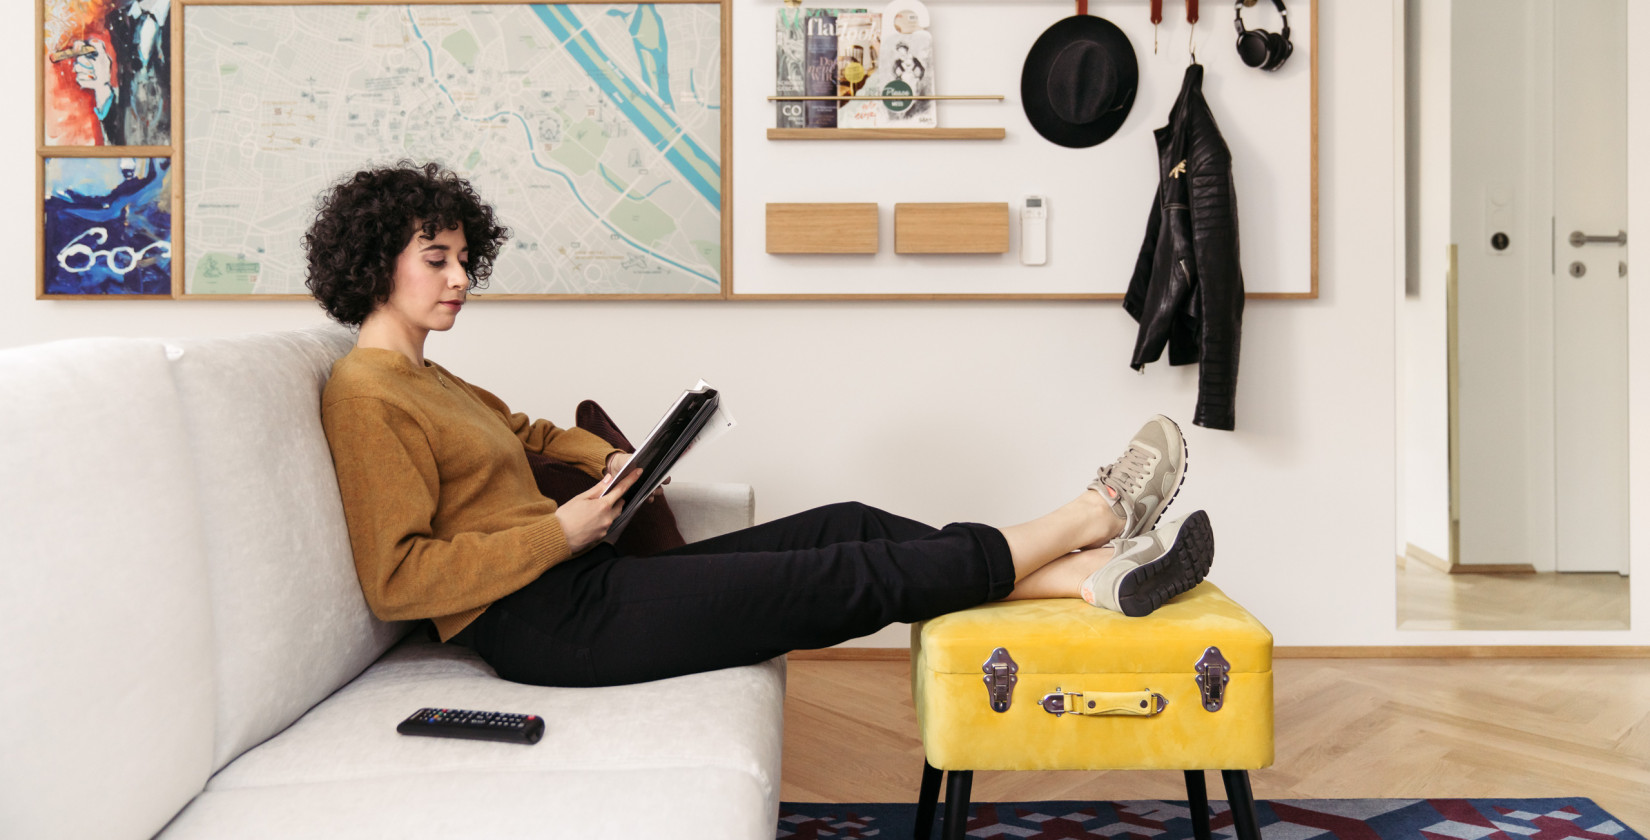 Frau sitzt auf einer Couch, liest und legt ihre Beine auf einen gelben Koffer